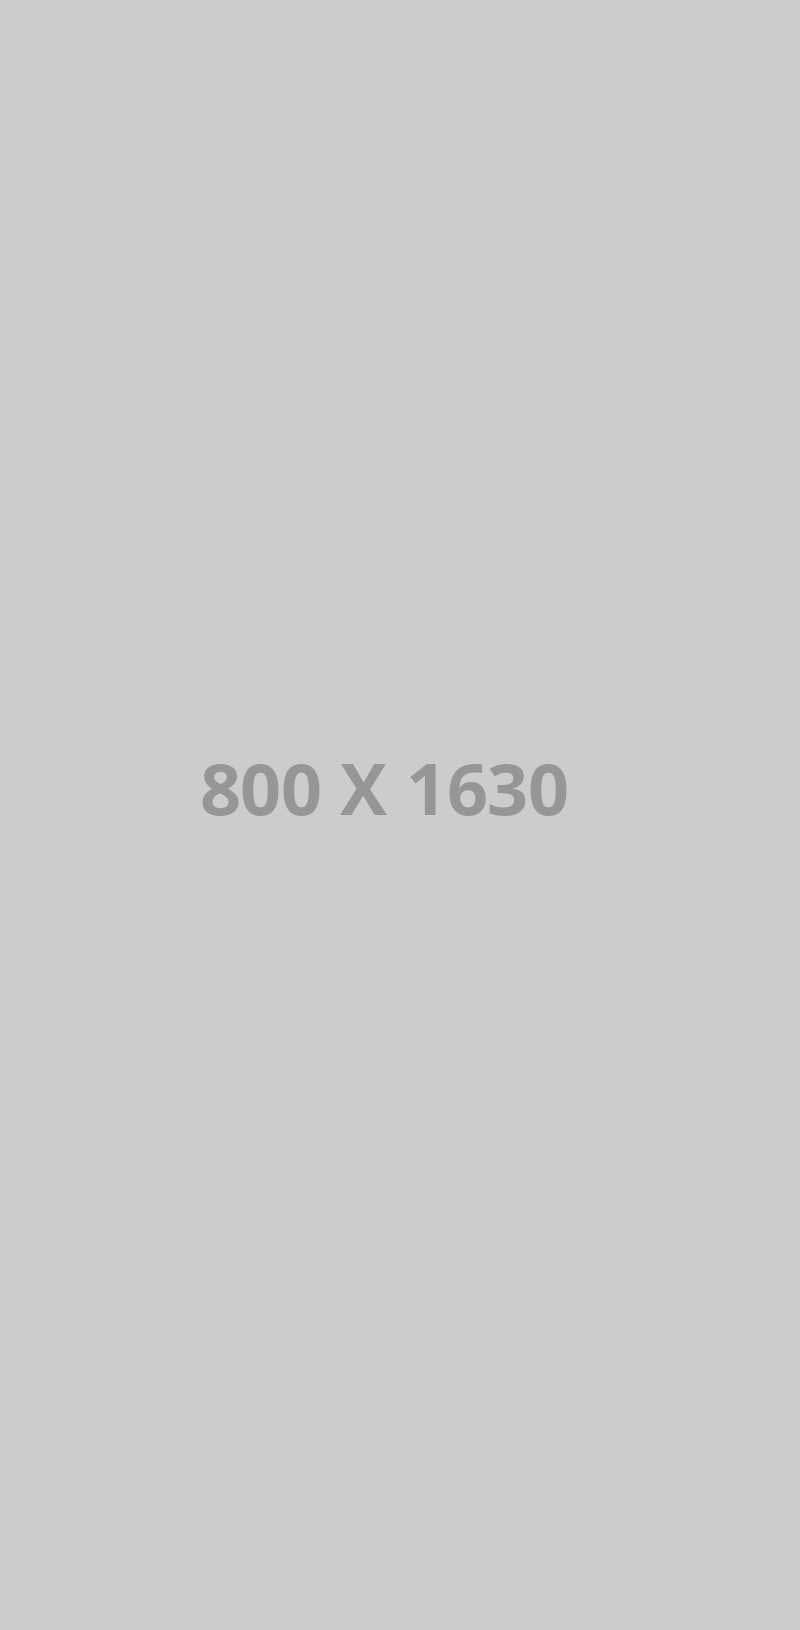 800x1630 ph